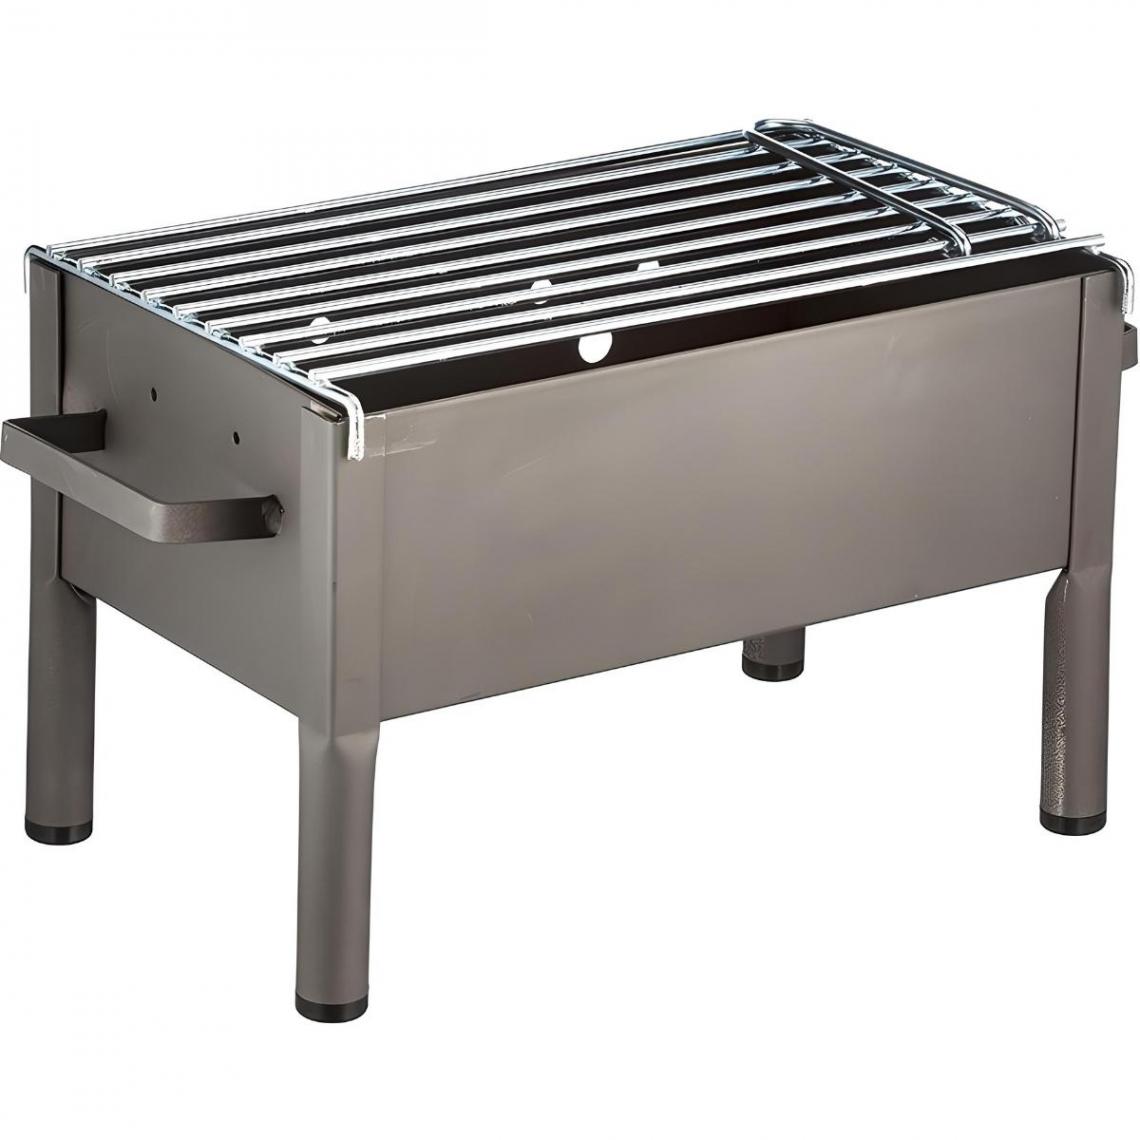 Visiodirect - Barbecue de Table en Zinc coloris Gris - 34 x 23 x 21 cm - Barbecues charbon de bois